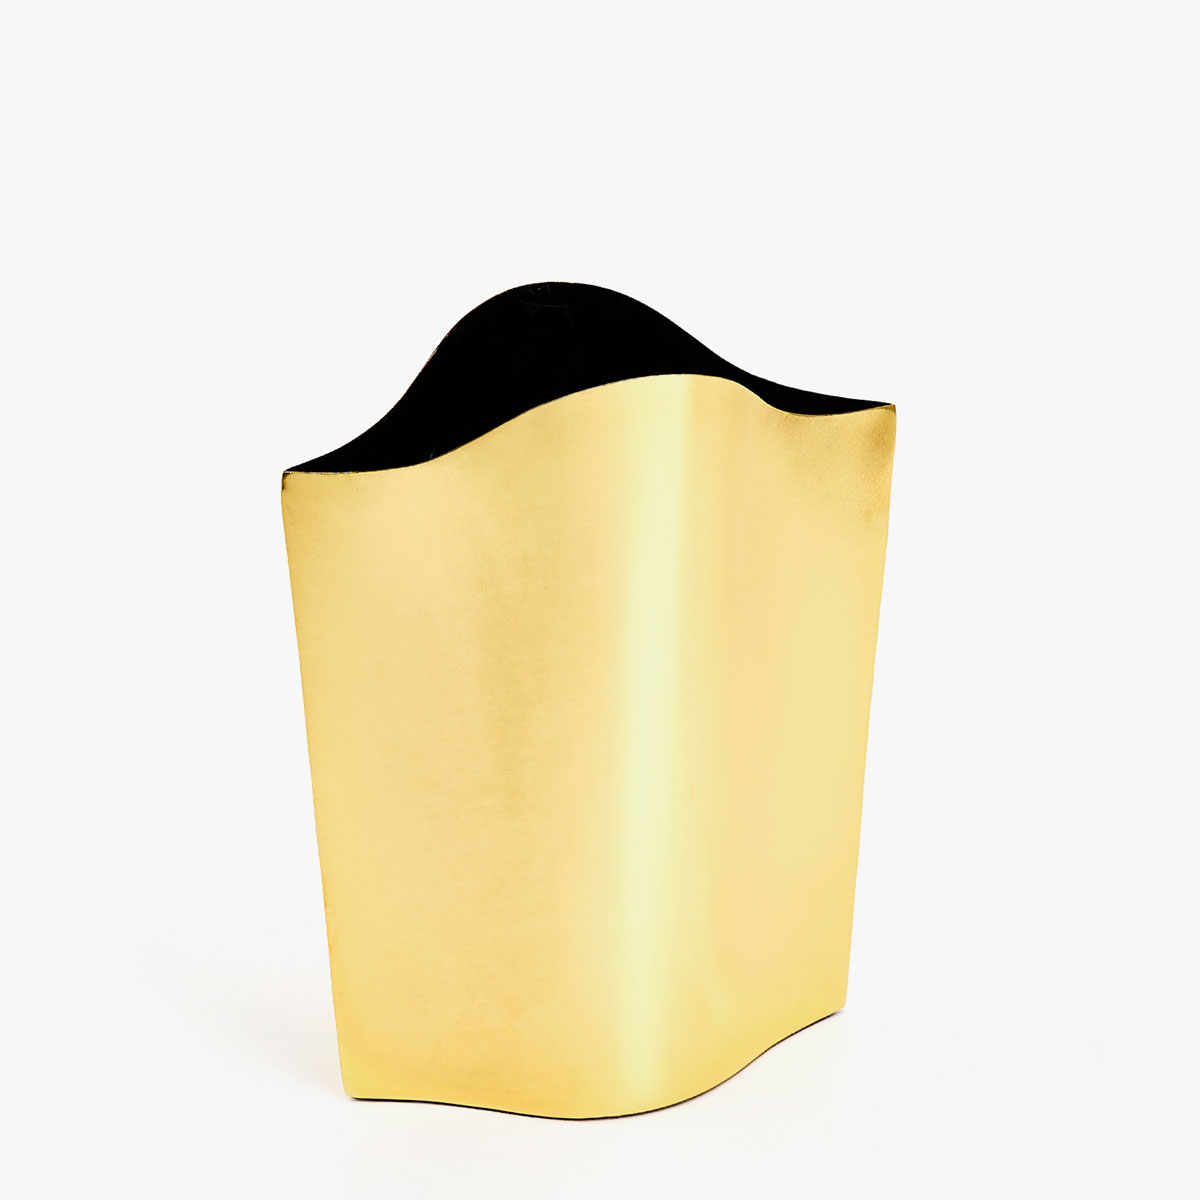 Afbeelding 1 van het product Goudkleurige metalen vaas